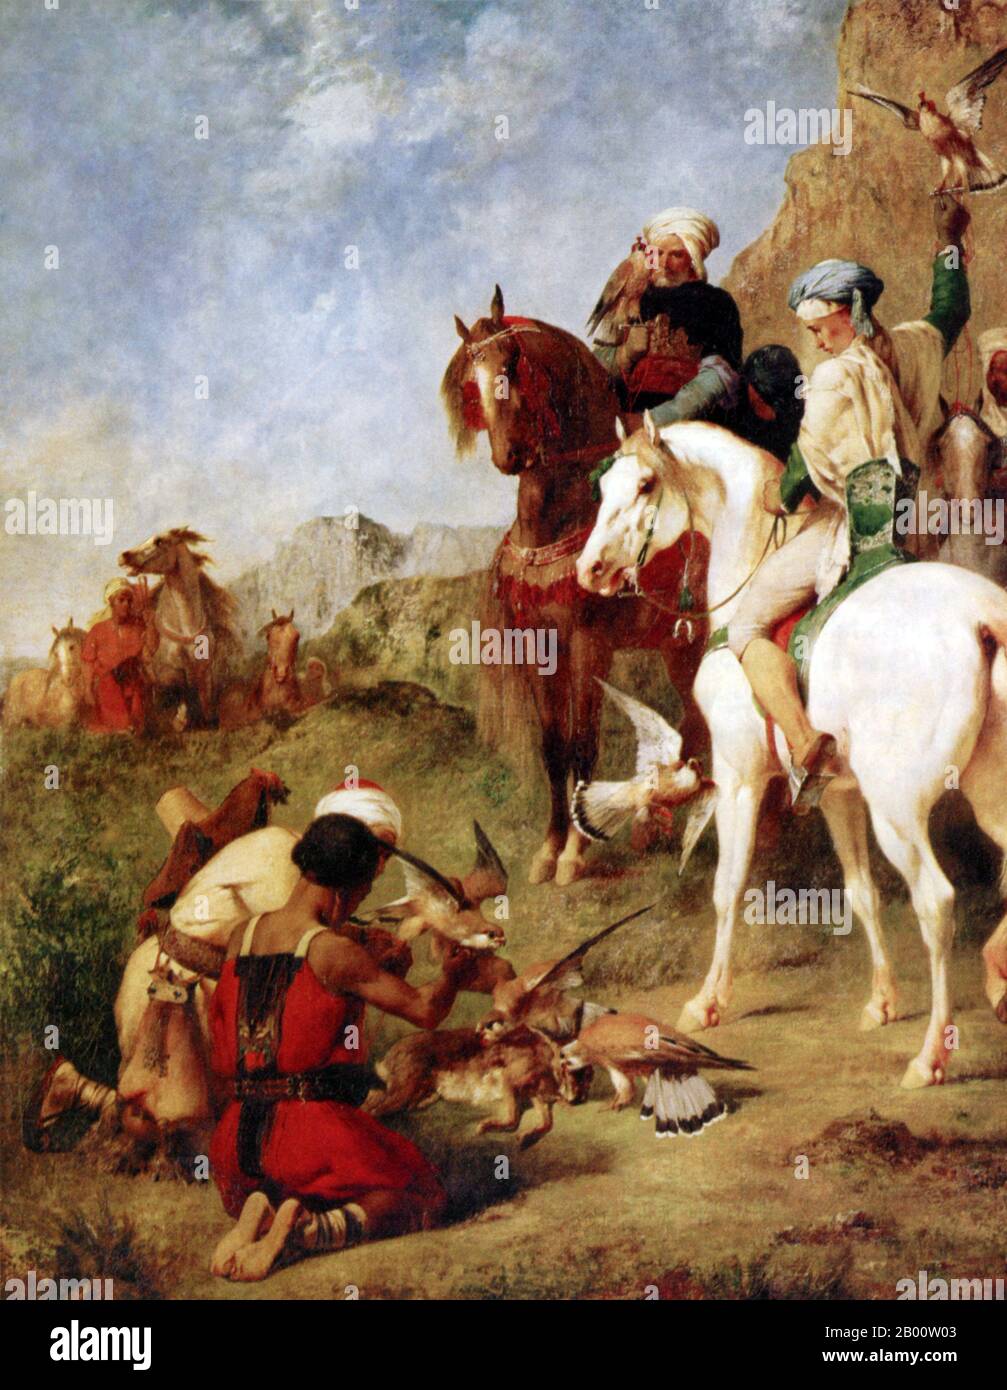 Algeria/Maghreb: ‘i Falconeri’. Olio su tela dipinto di Eugene Fromentin (1820-1876), che mostra anche gli algerini locali su cavalli Barb, 1863. Lo sport della falconeria è stato introdotto in Algeria e nel Maghreb dagli arabi oltre 1,000 anni fa ed è stato un passatempo preferito di regalità e nobiltà. Durante il periodo di espansione araba nel Nord Africa, la cavalleria è stata spesso montata su piccoli cavalli agili chiamati ‘berberi’, o ‘barbe’. Foto Stock